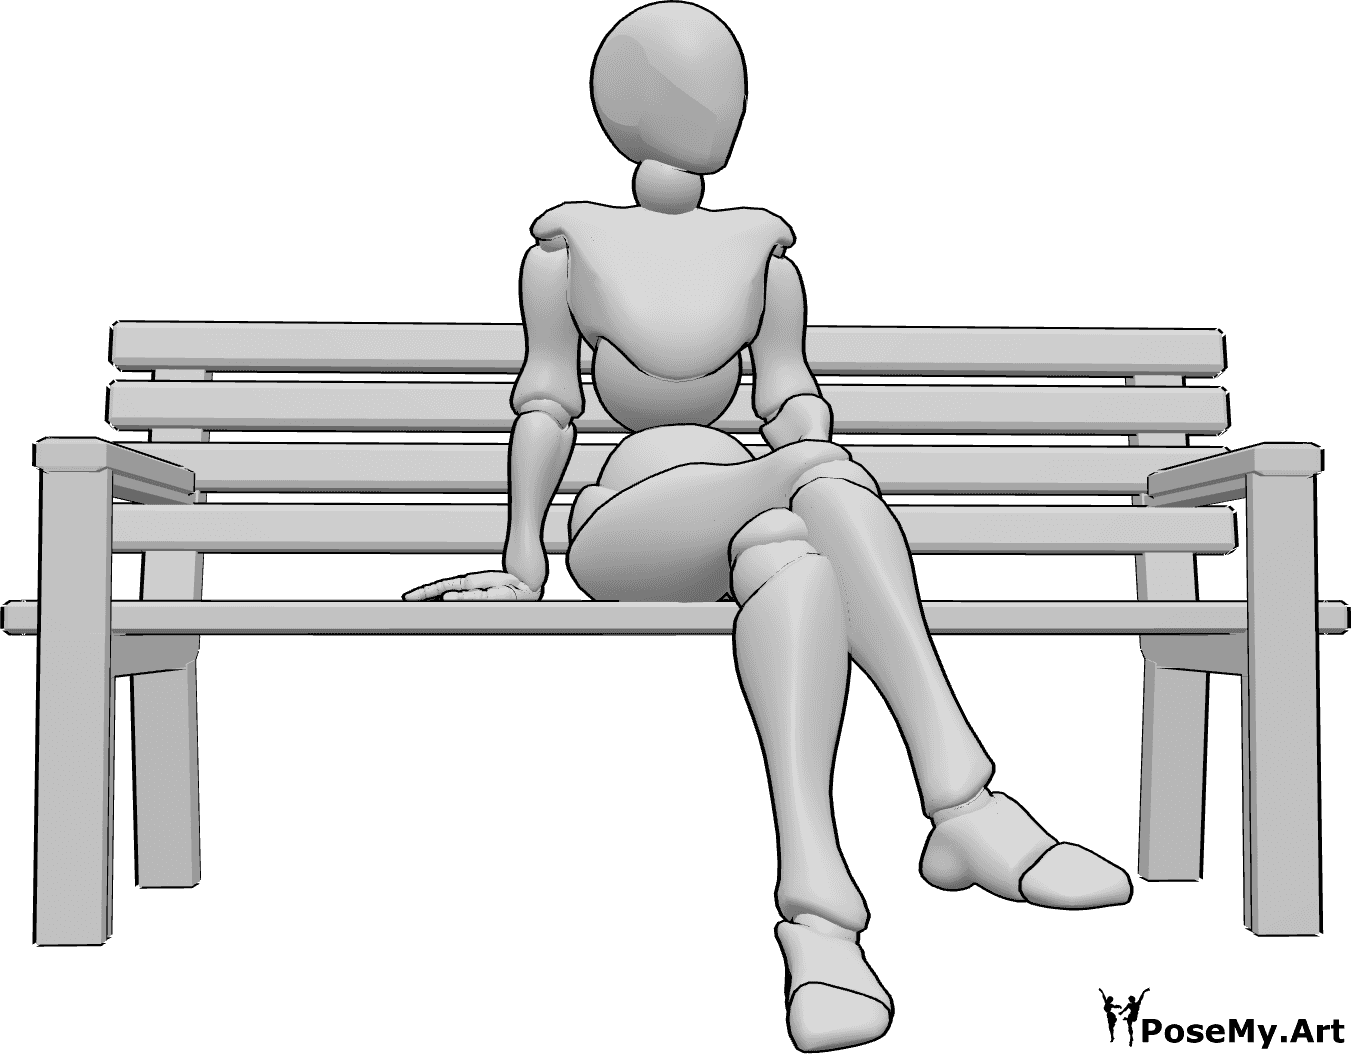 Referência de poses- Postura sentada com as pernas cruzadas - A mulher está sentada no banco com as pernas cruzadas e a olhar para a esquerda